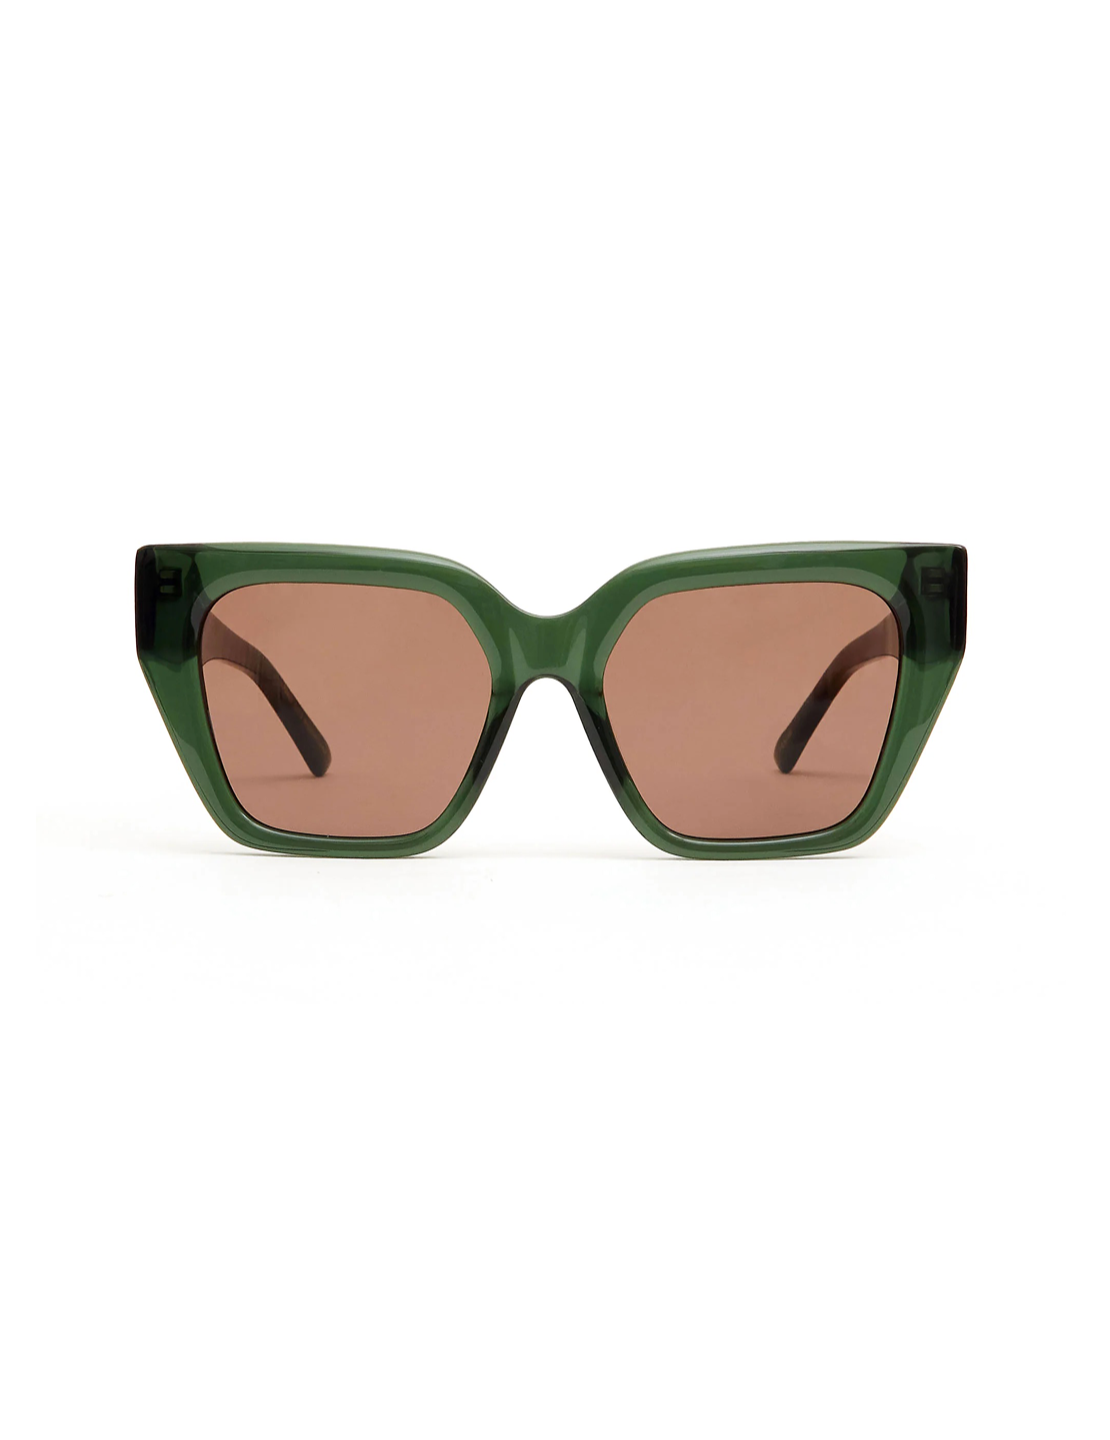 Clare V - Heather sunglasses green